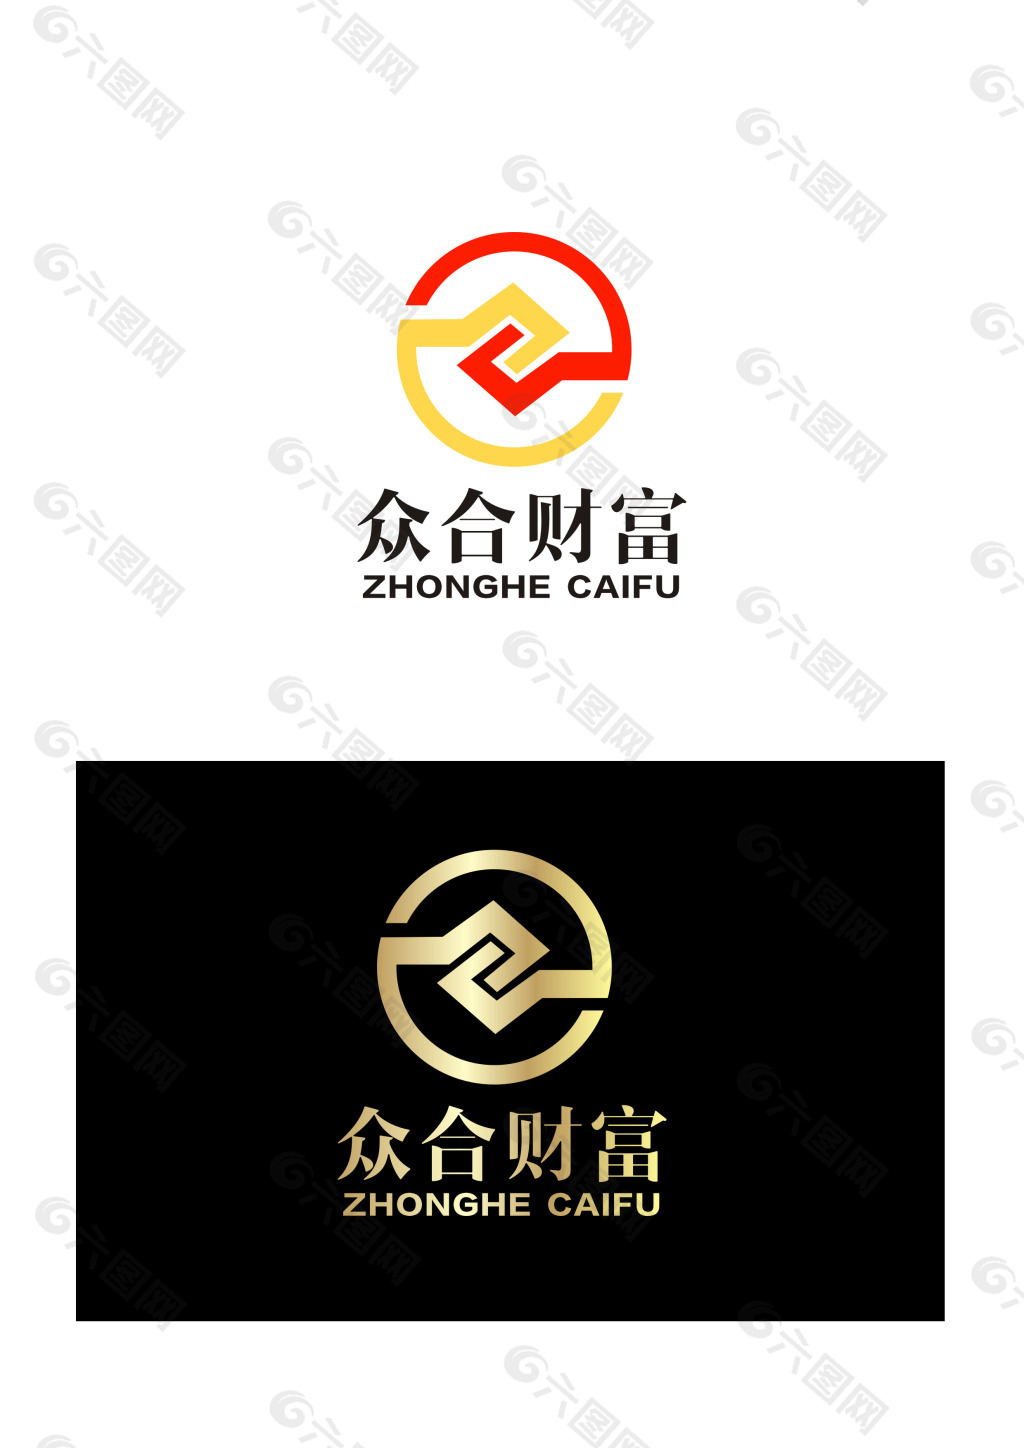 投资公司logo设计图